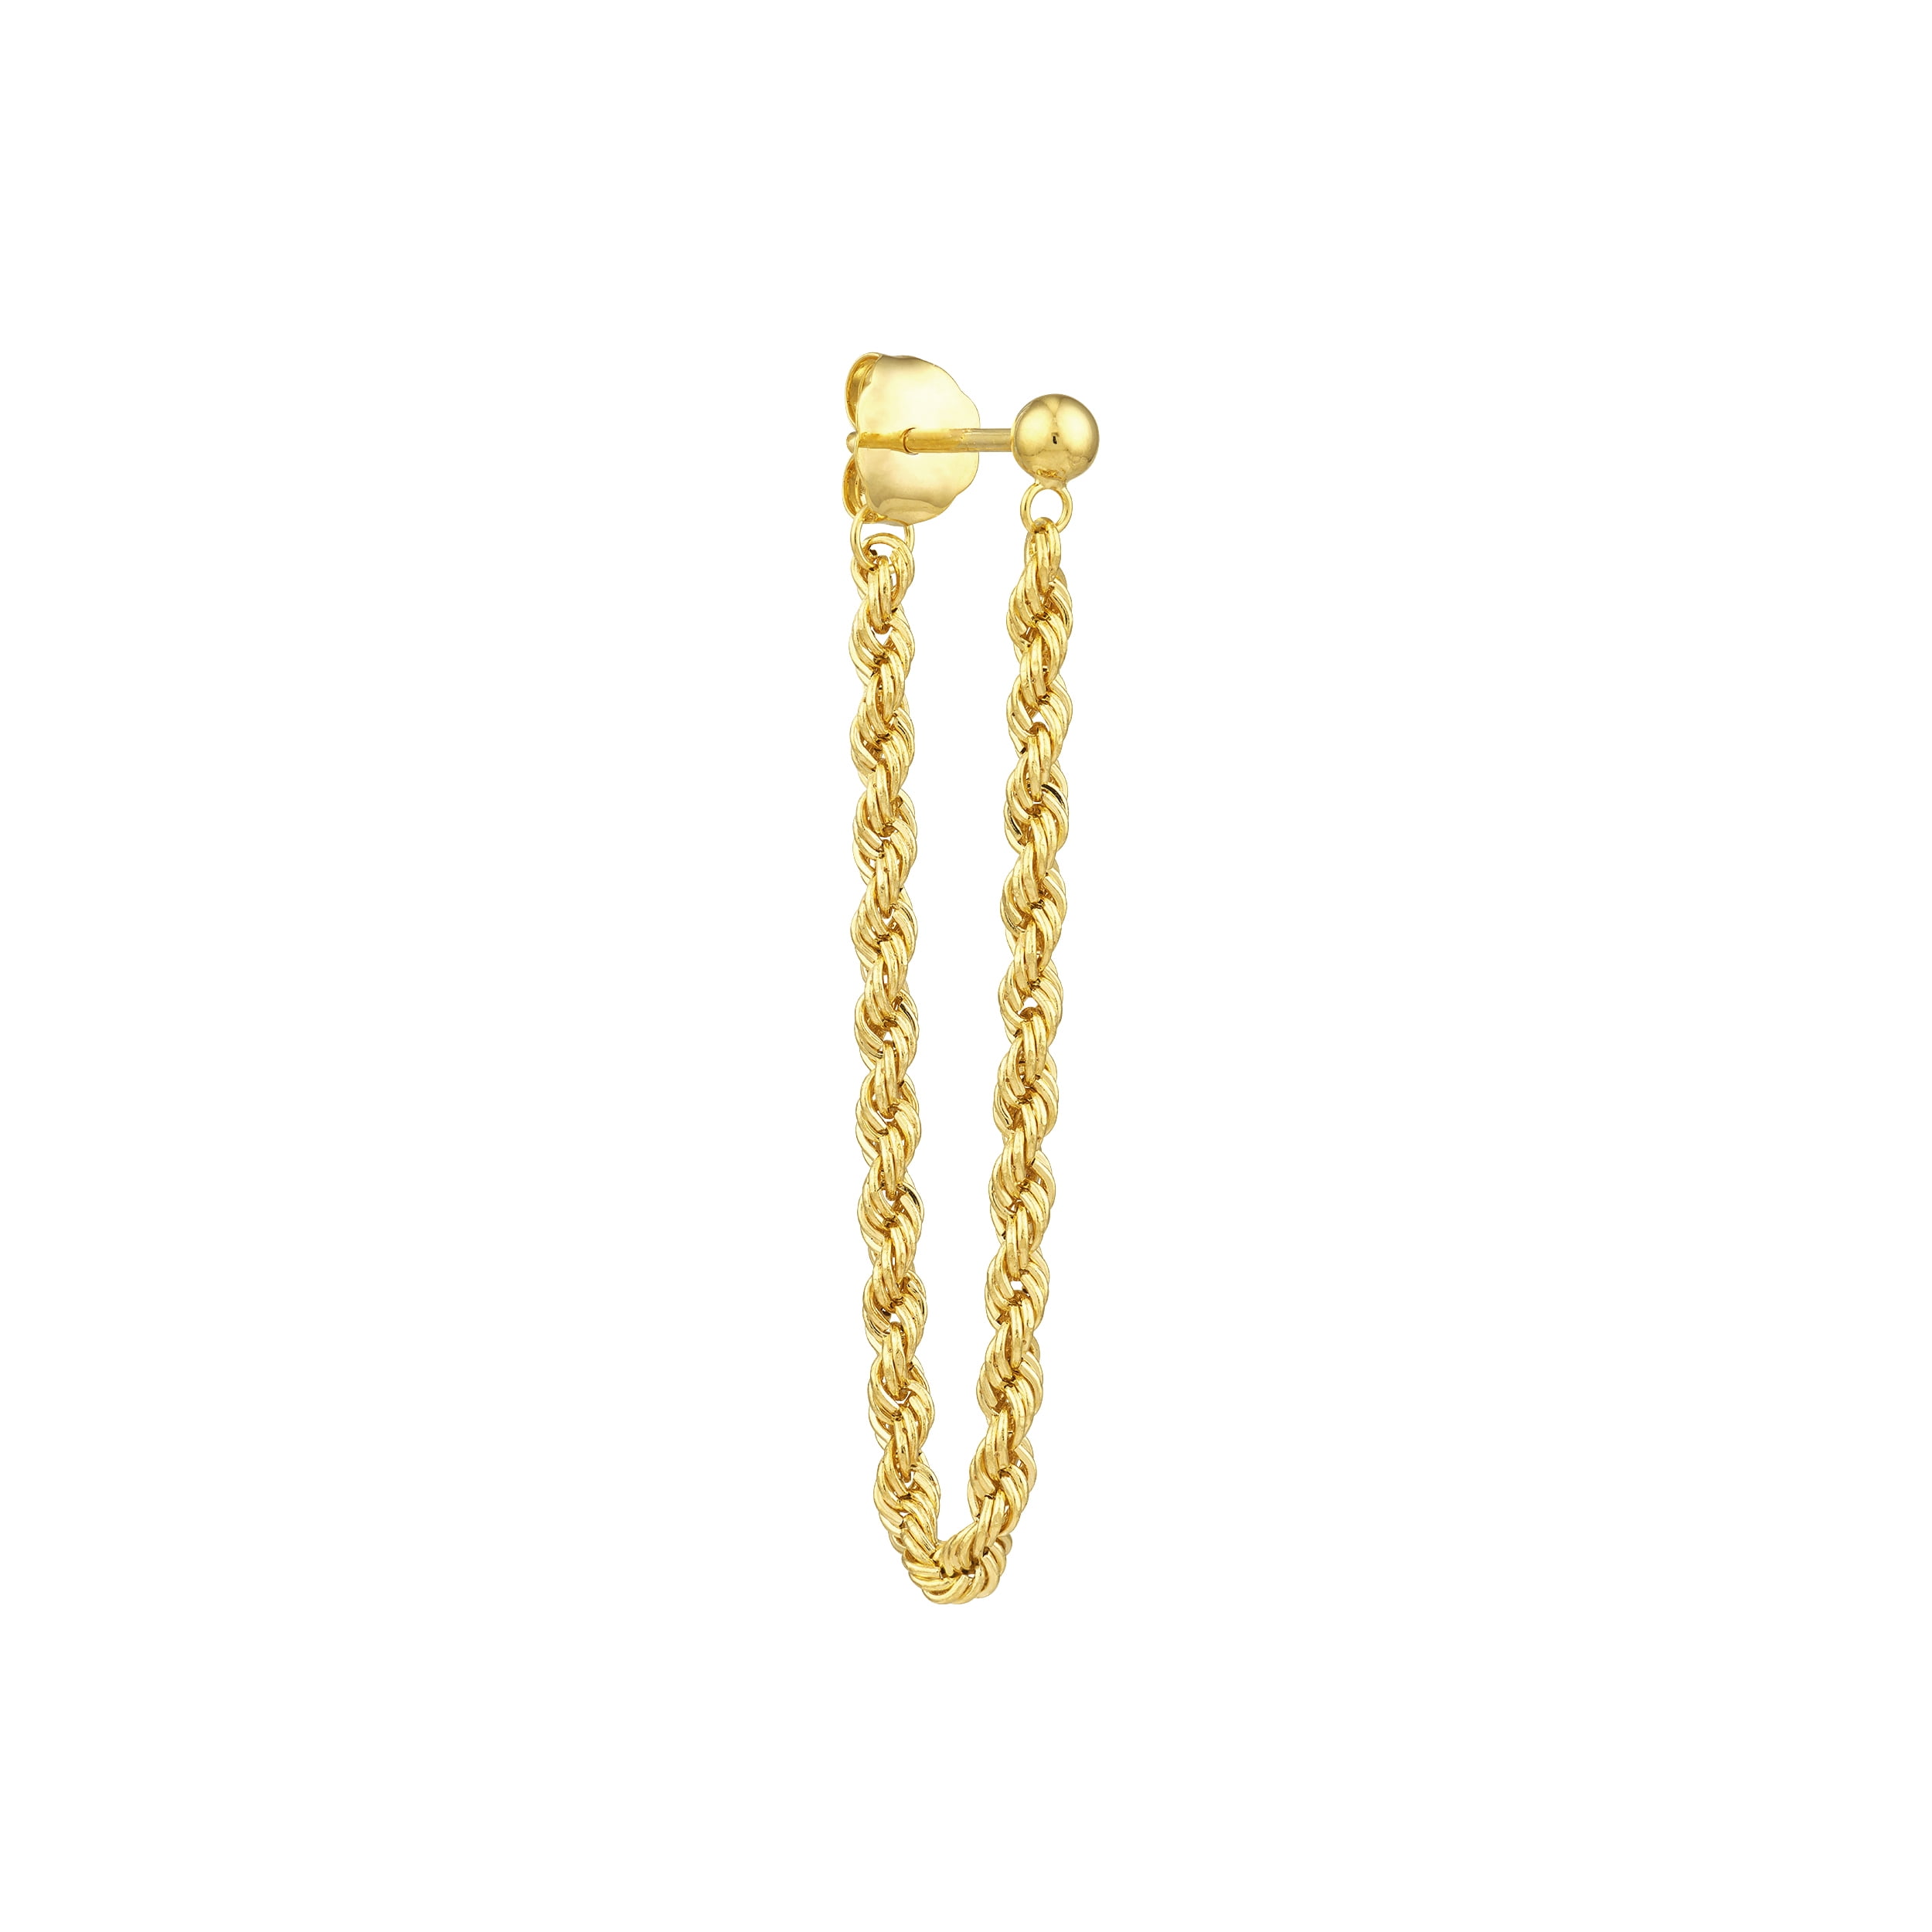 Extra Long Earrings, Gold Filled Chain Earrings Long, Minimalist Gold  Earrings Long Drop Earrings, Statement Earrings, Shoulder Dusters, - Etsy